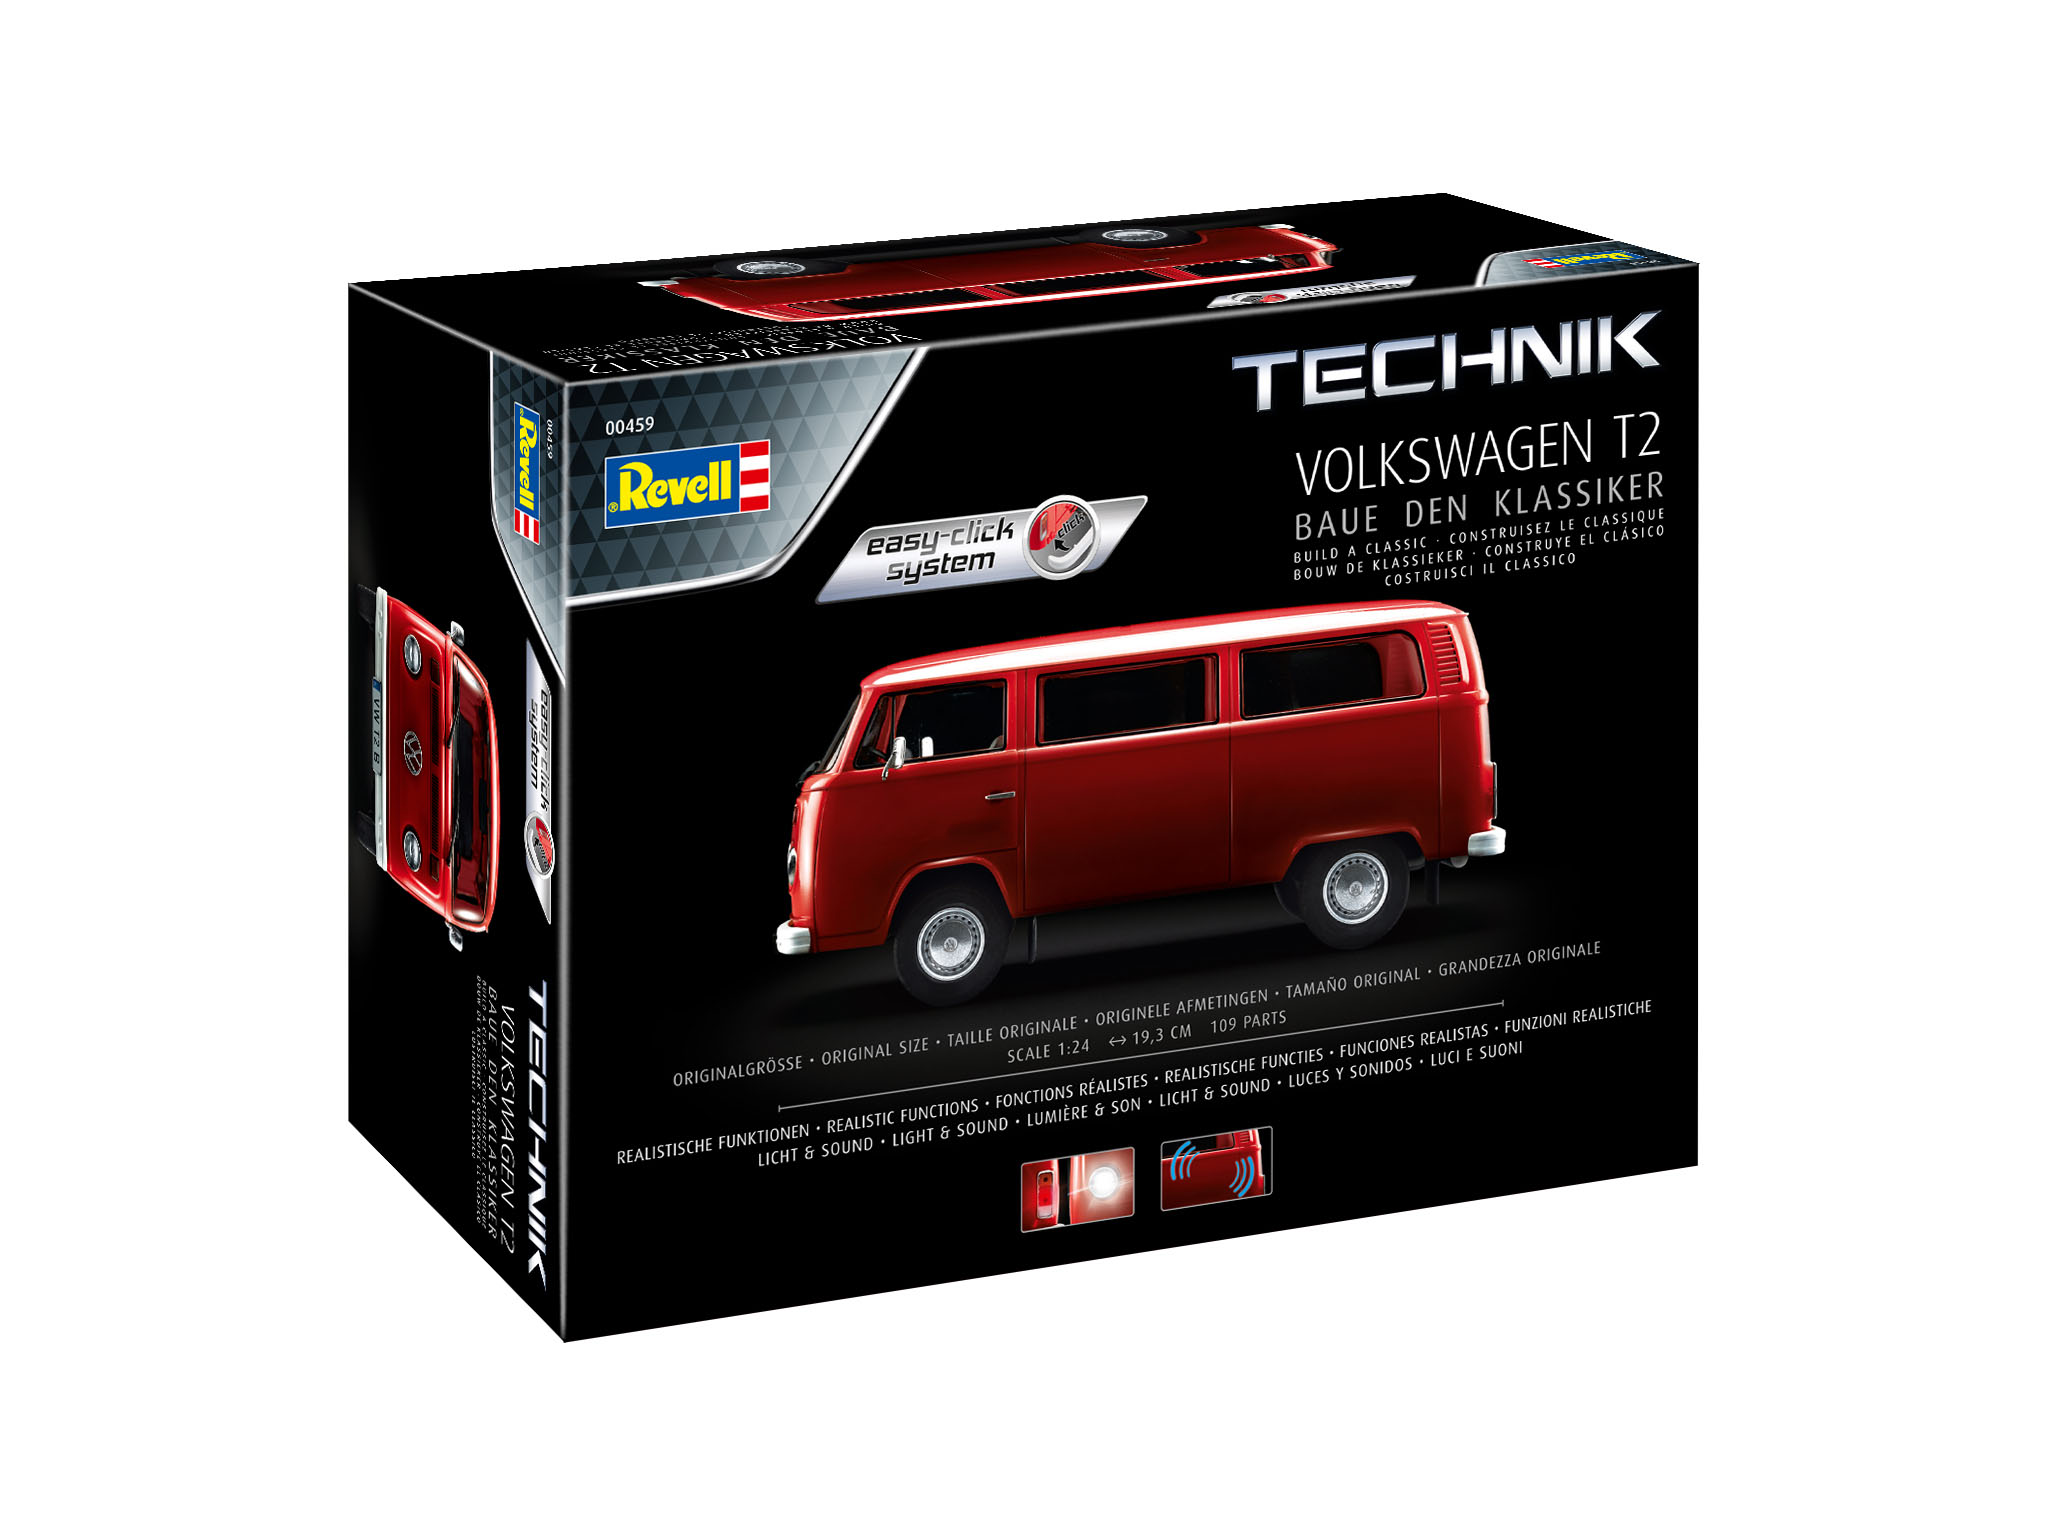 Revell 00459 Volkswagen T2 - Technik Easy-Click